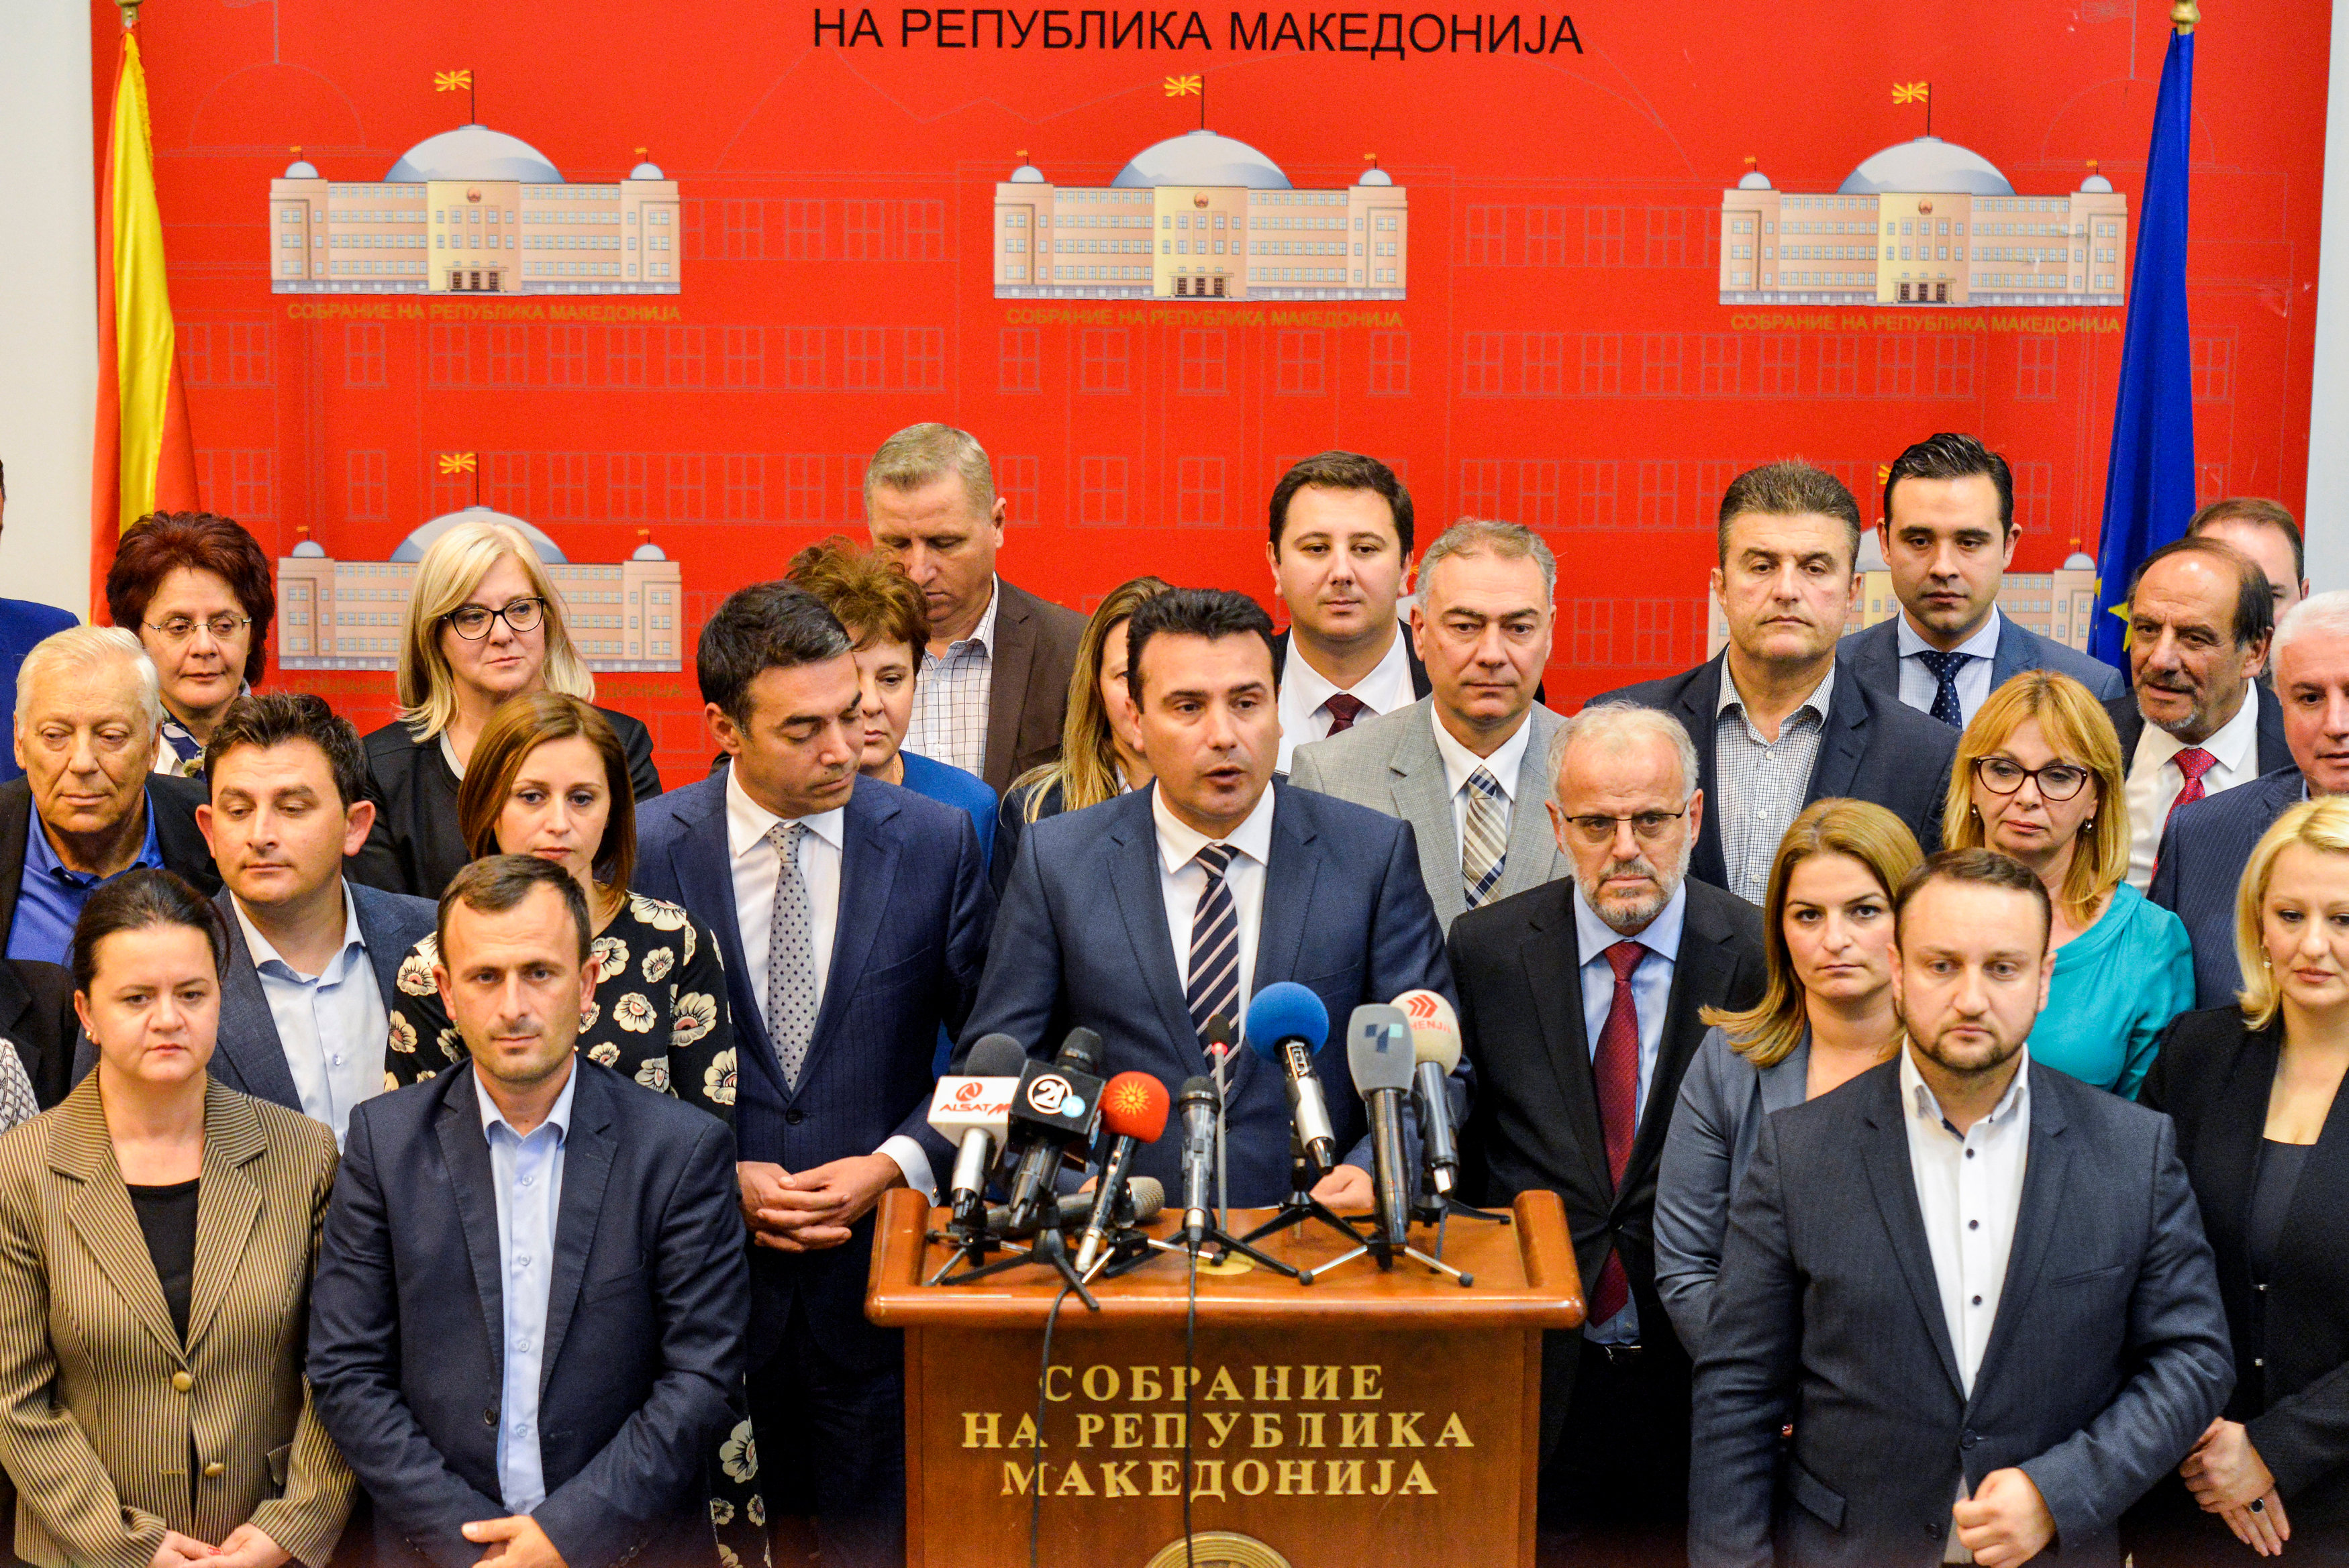 Πως είδαν τα ξένα media την ψηφοφορία στα Σκόπια